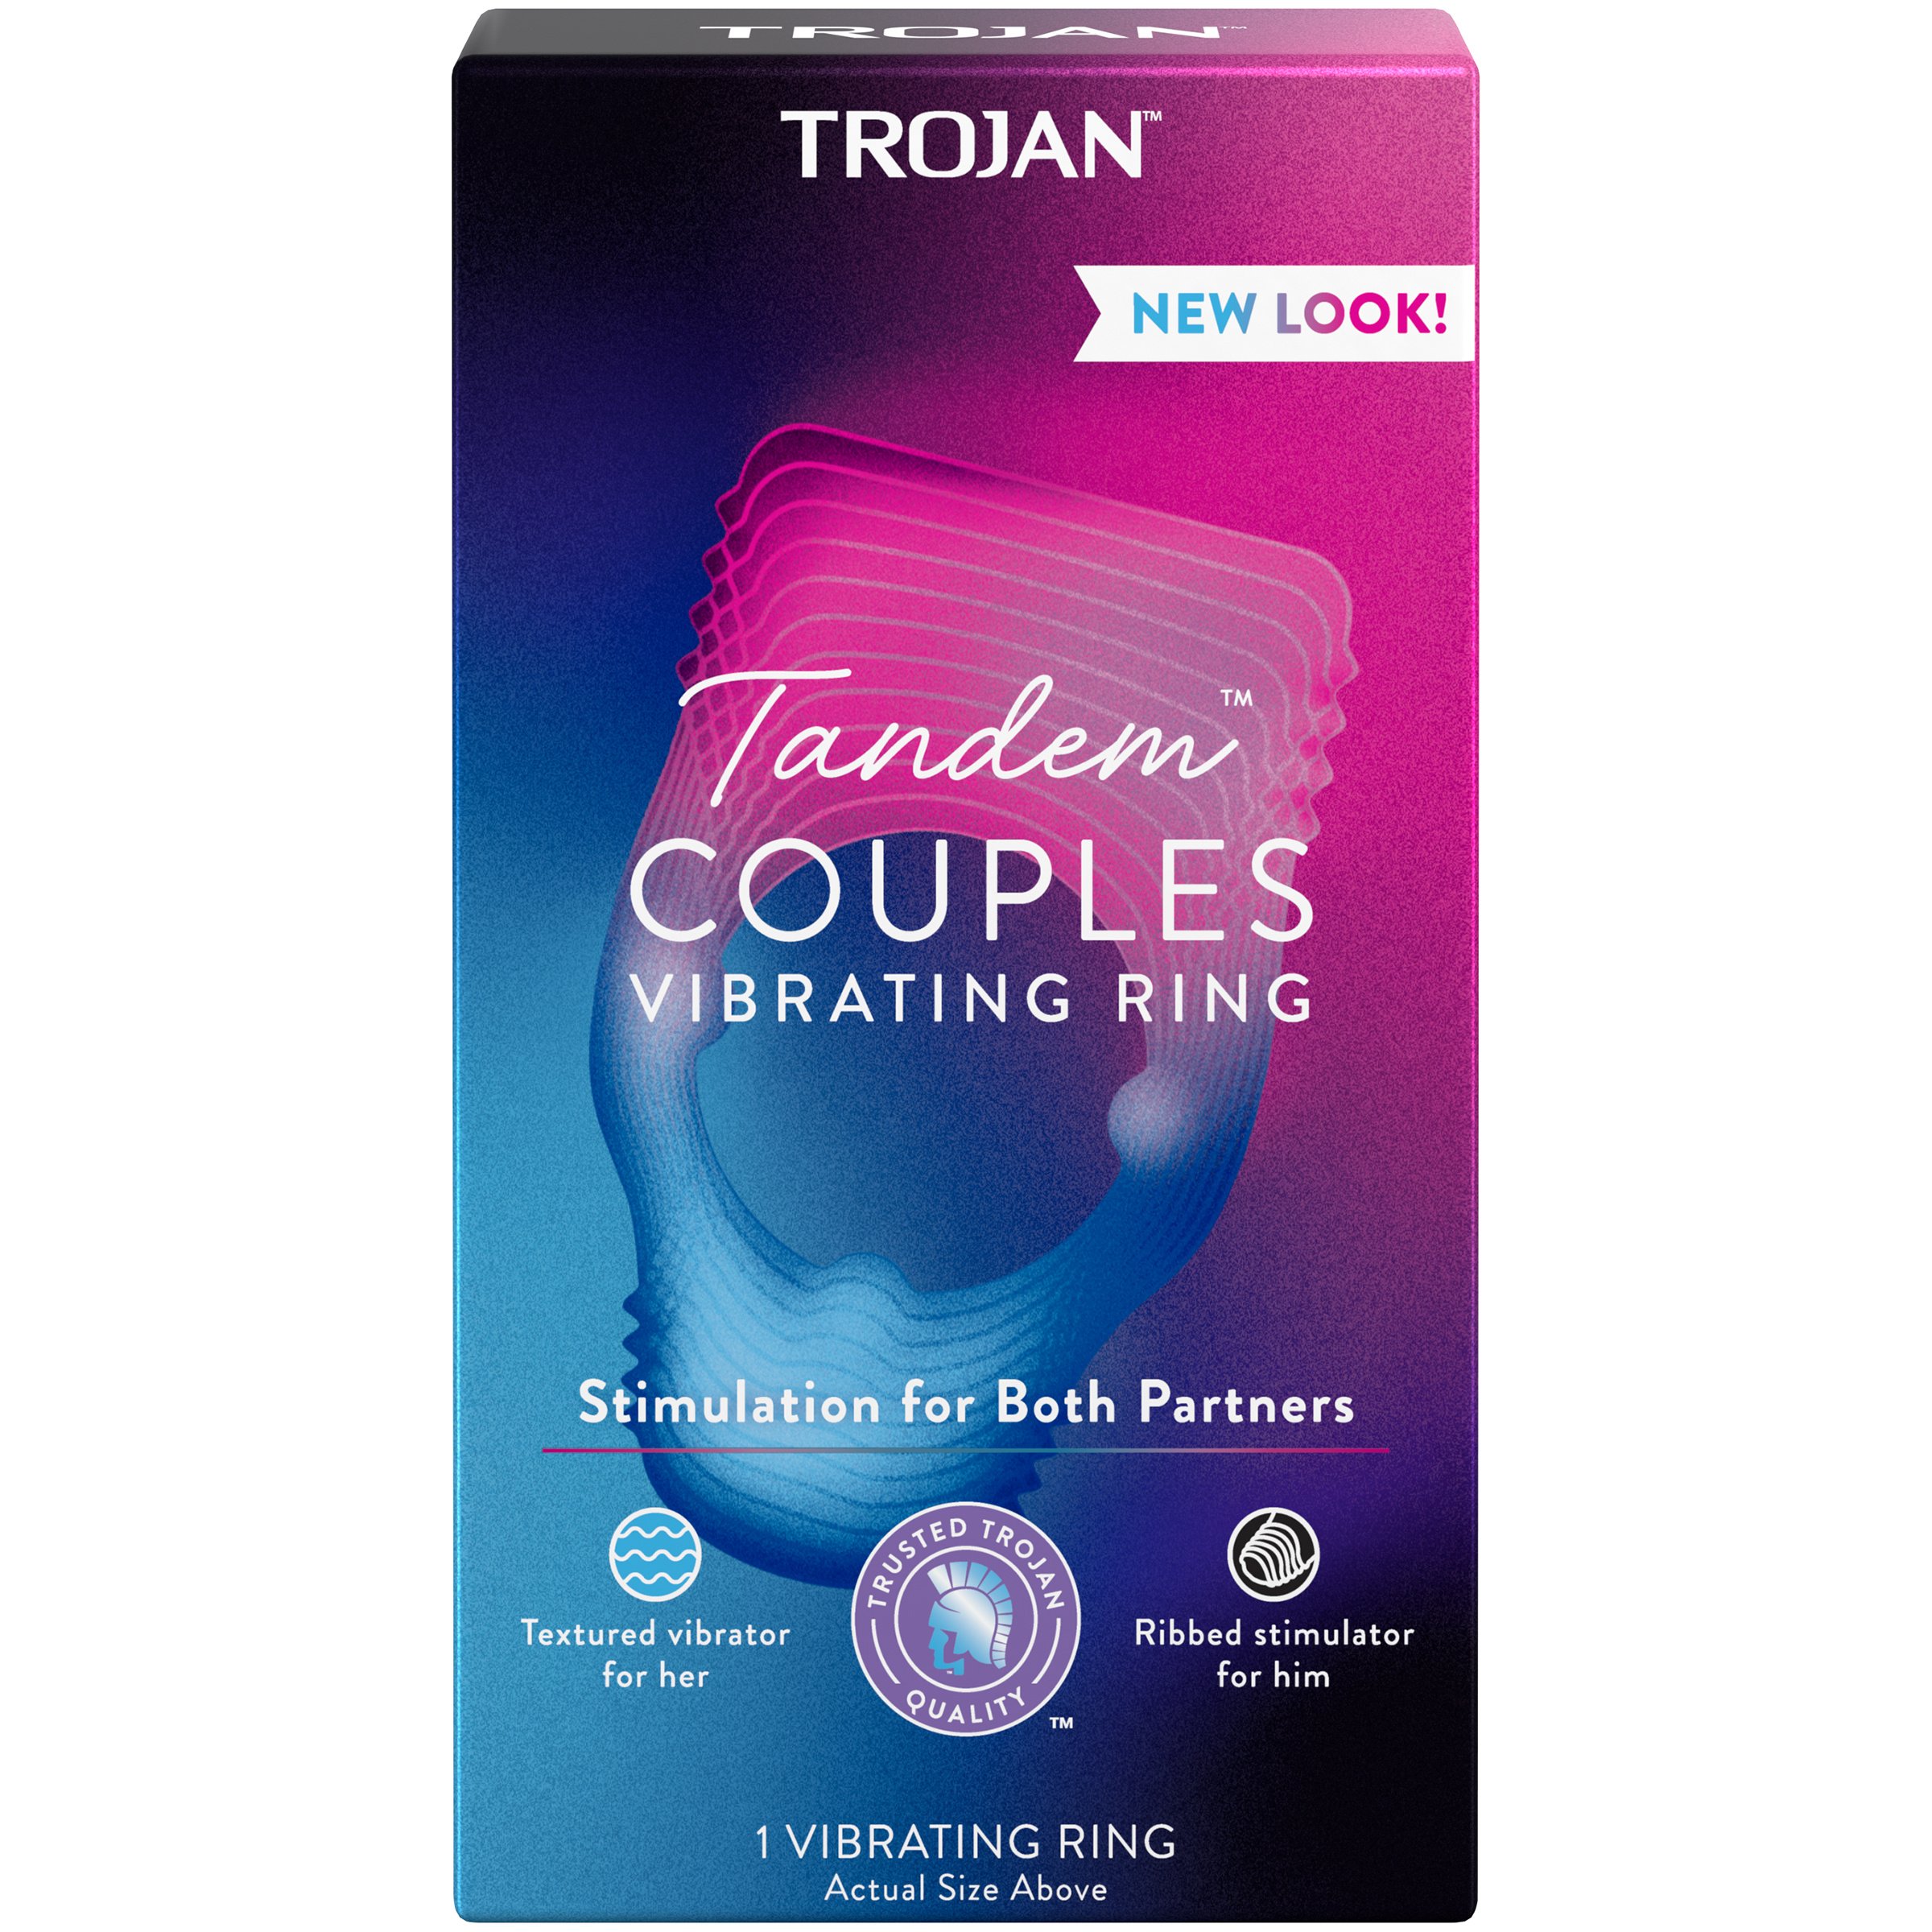 Trojan Tandem Couples Vibrating Ring Shop Condoms & Contraception at